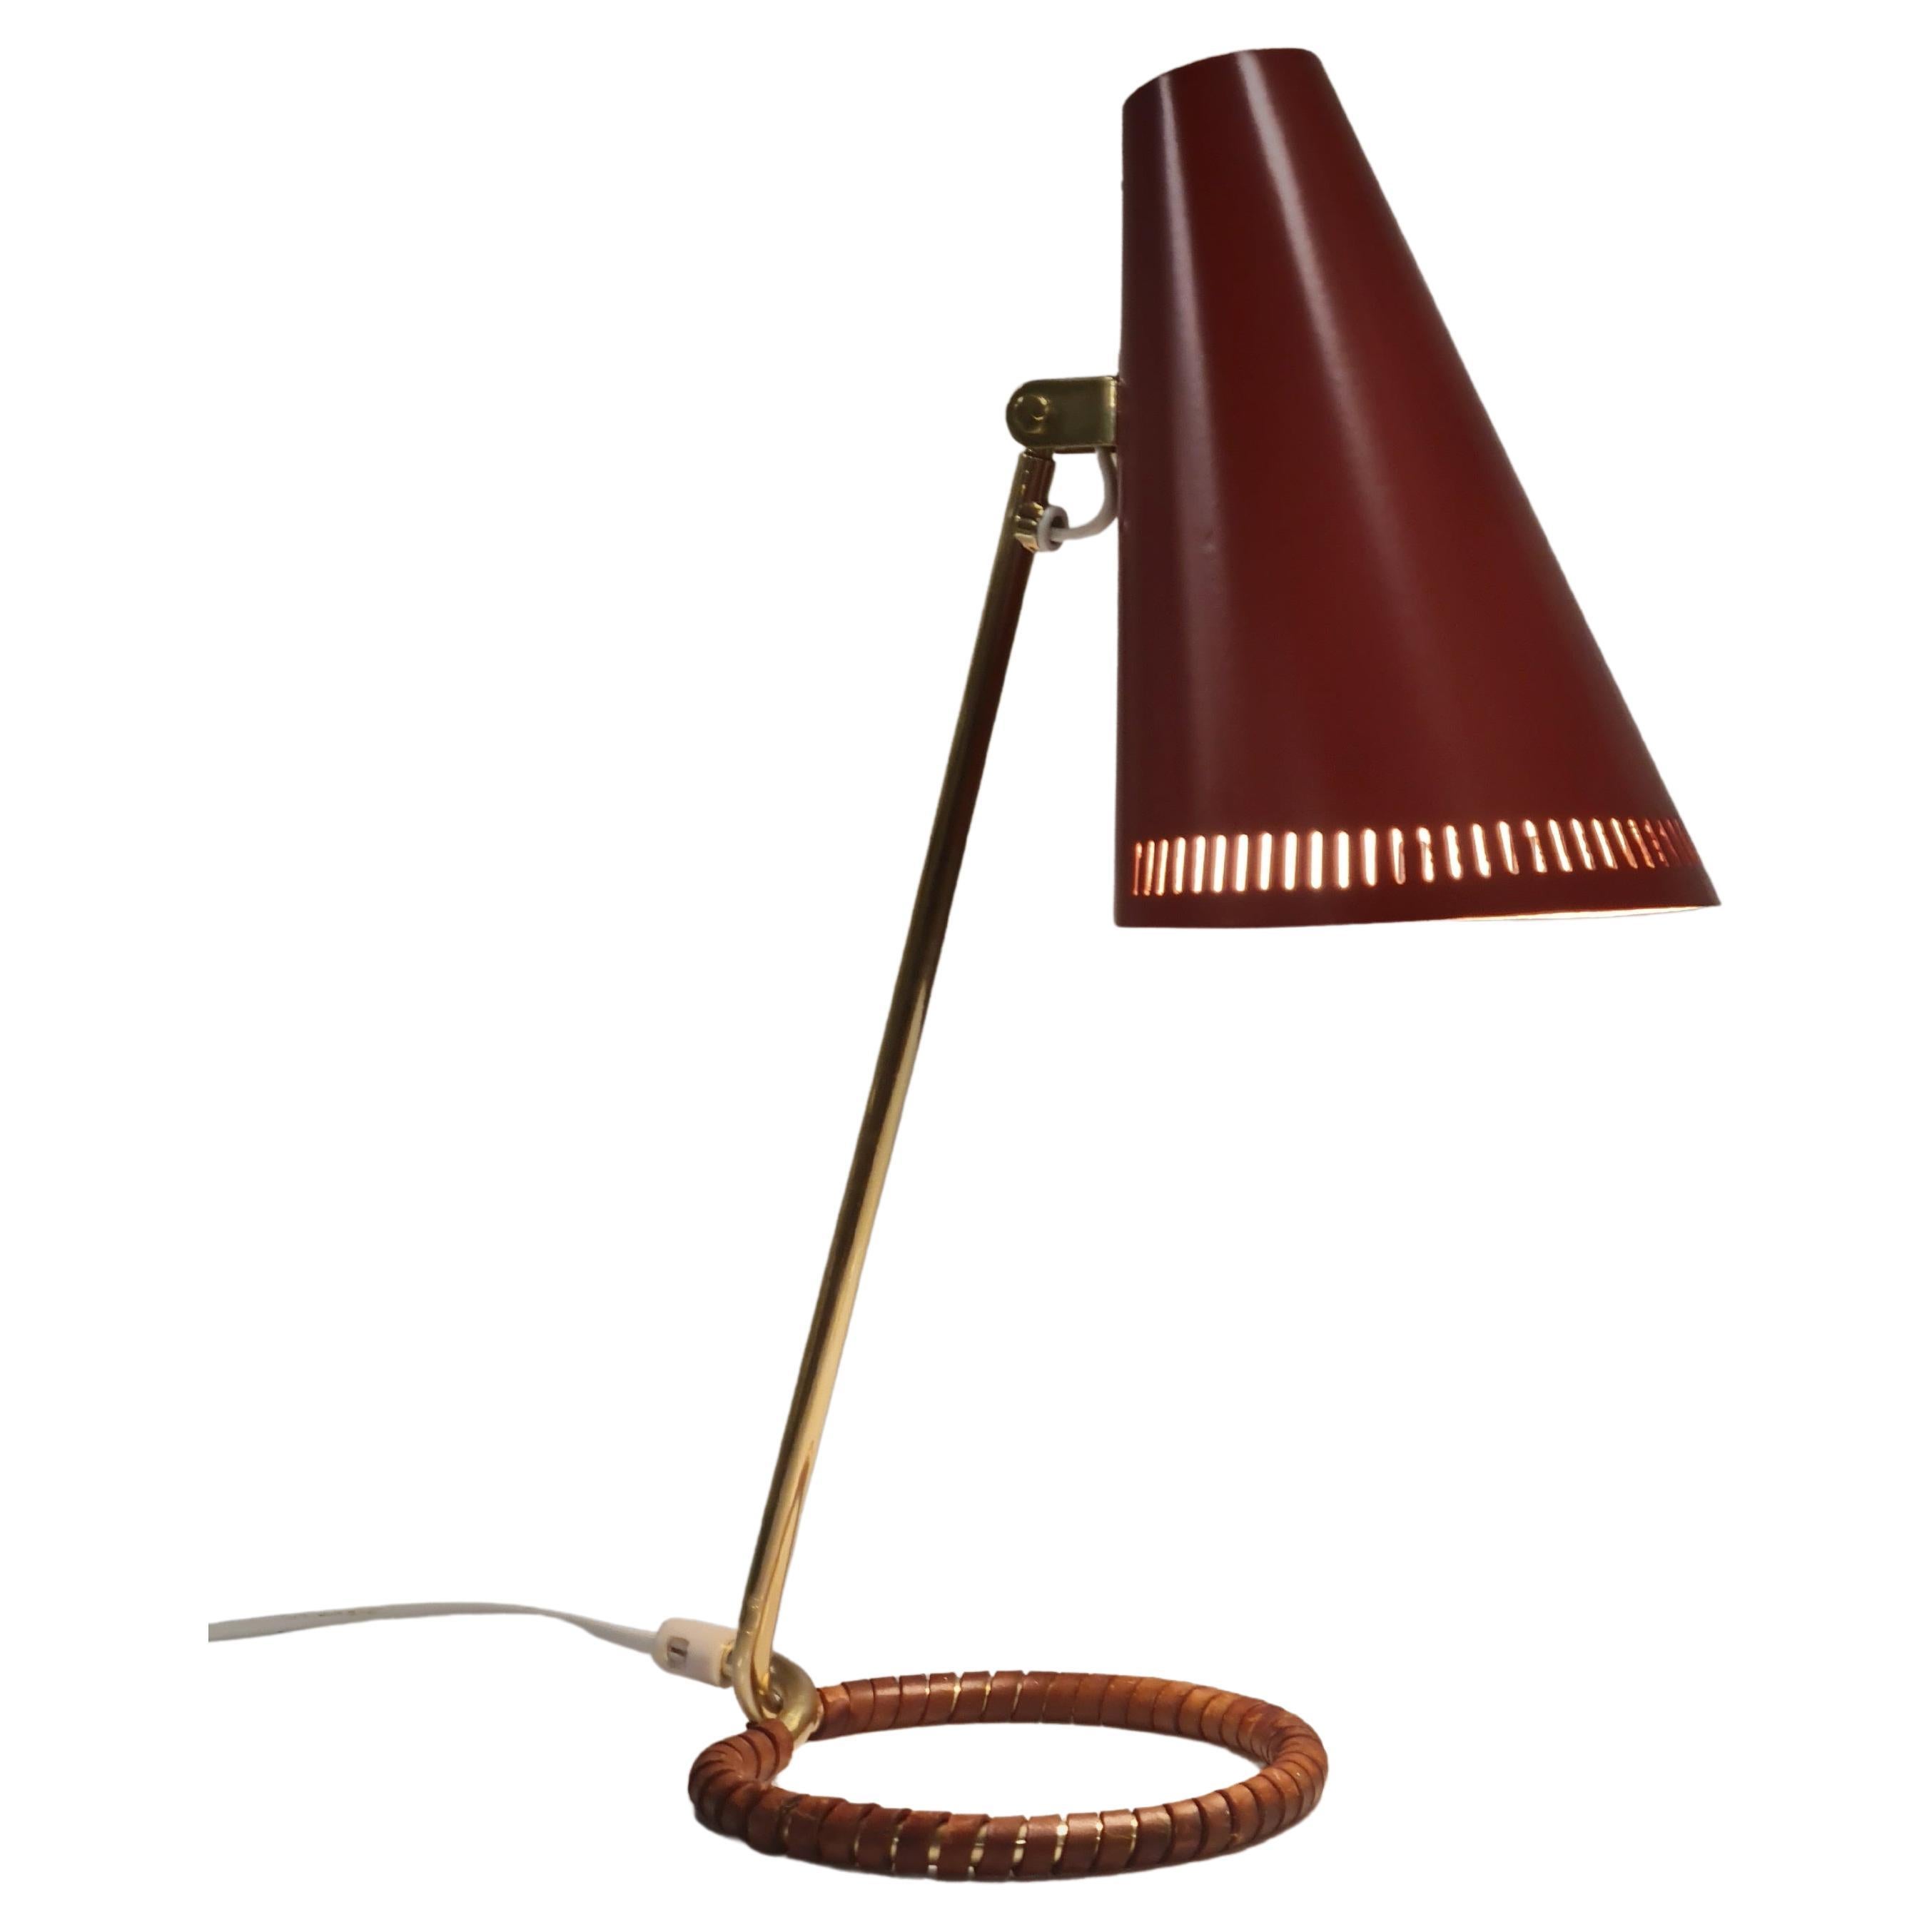 Mauri Almari Table Lamp Model K11-15 in Red, Idman